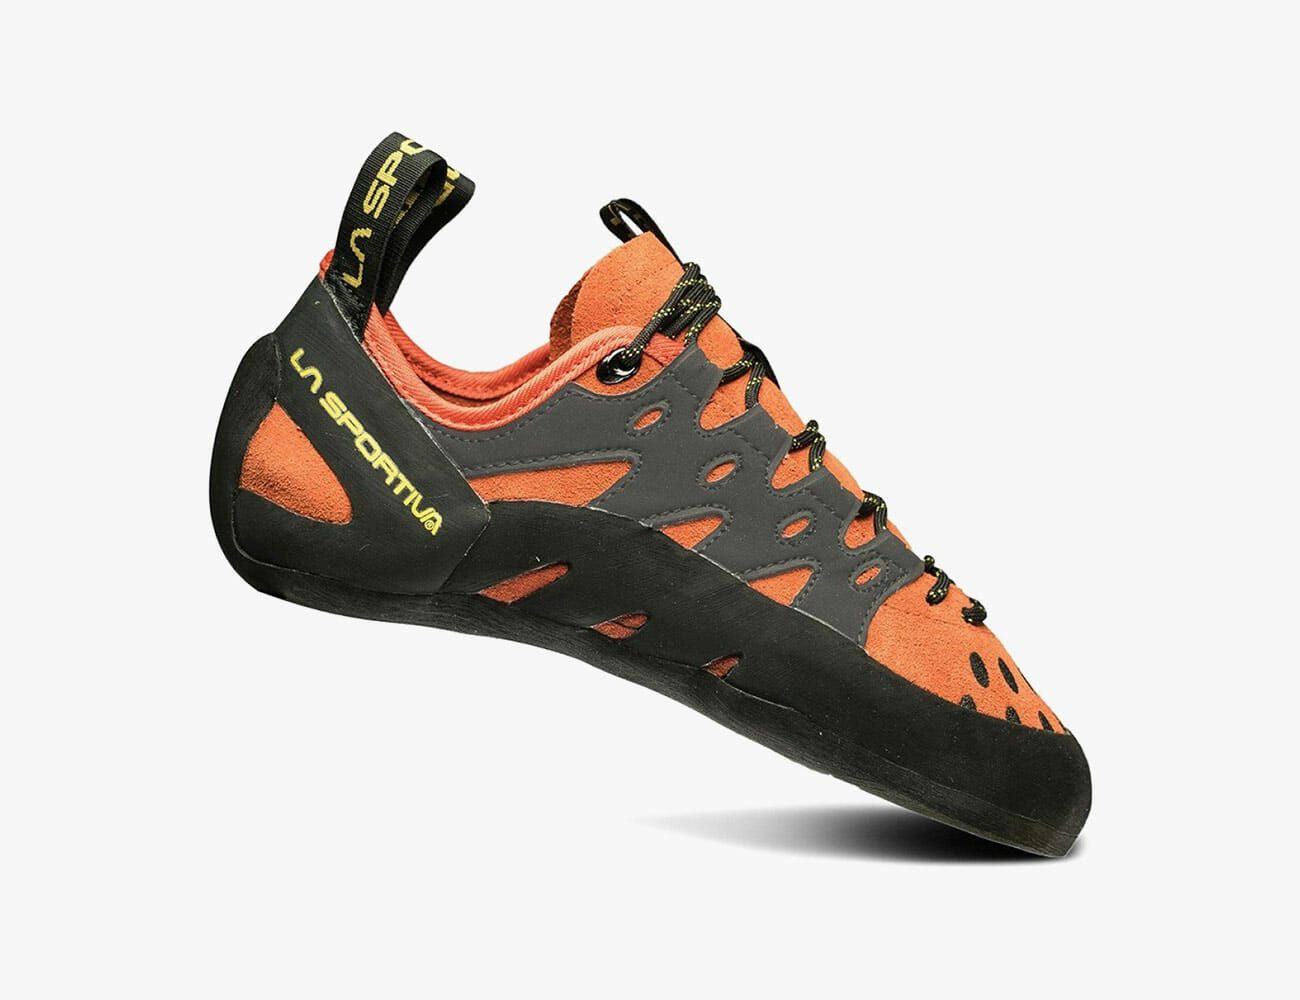 2019 best climbing shoes